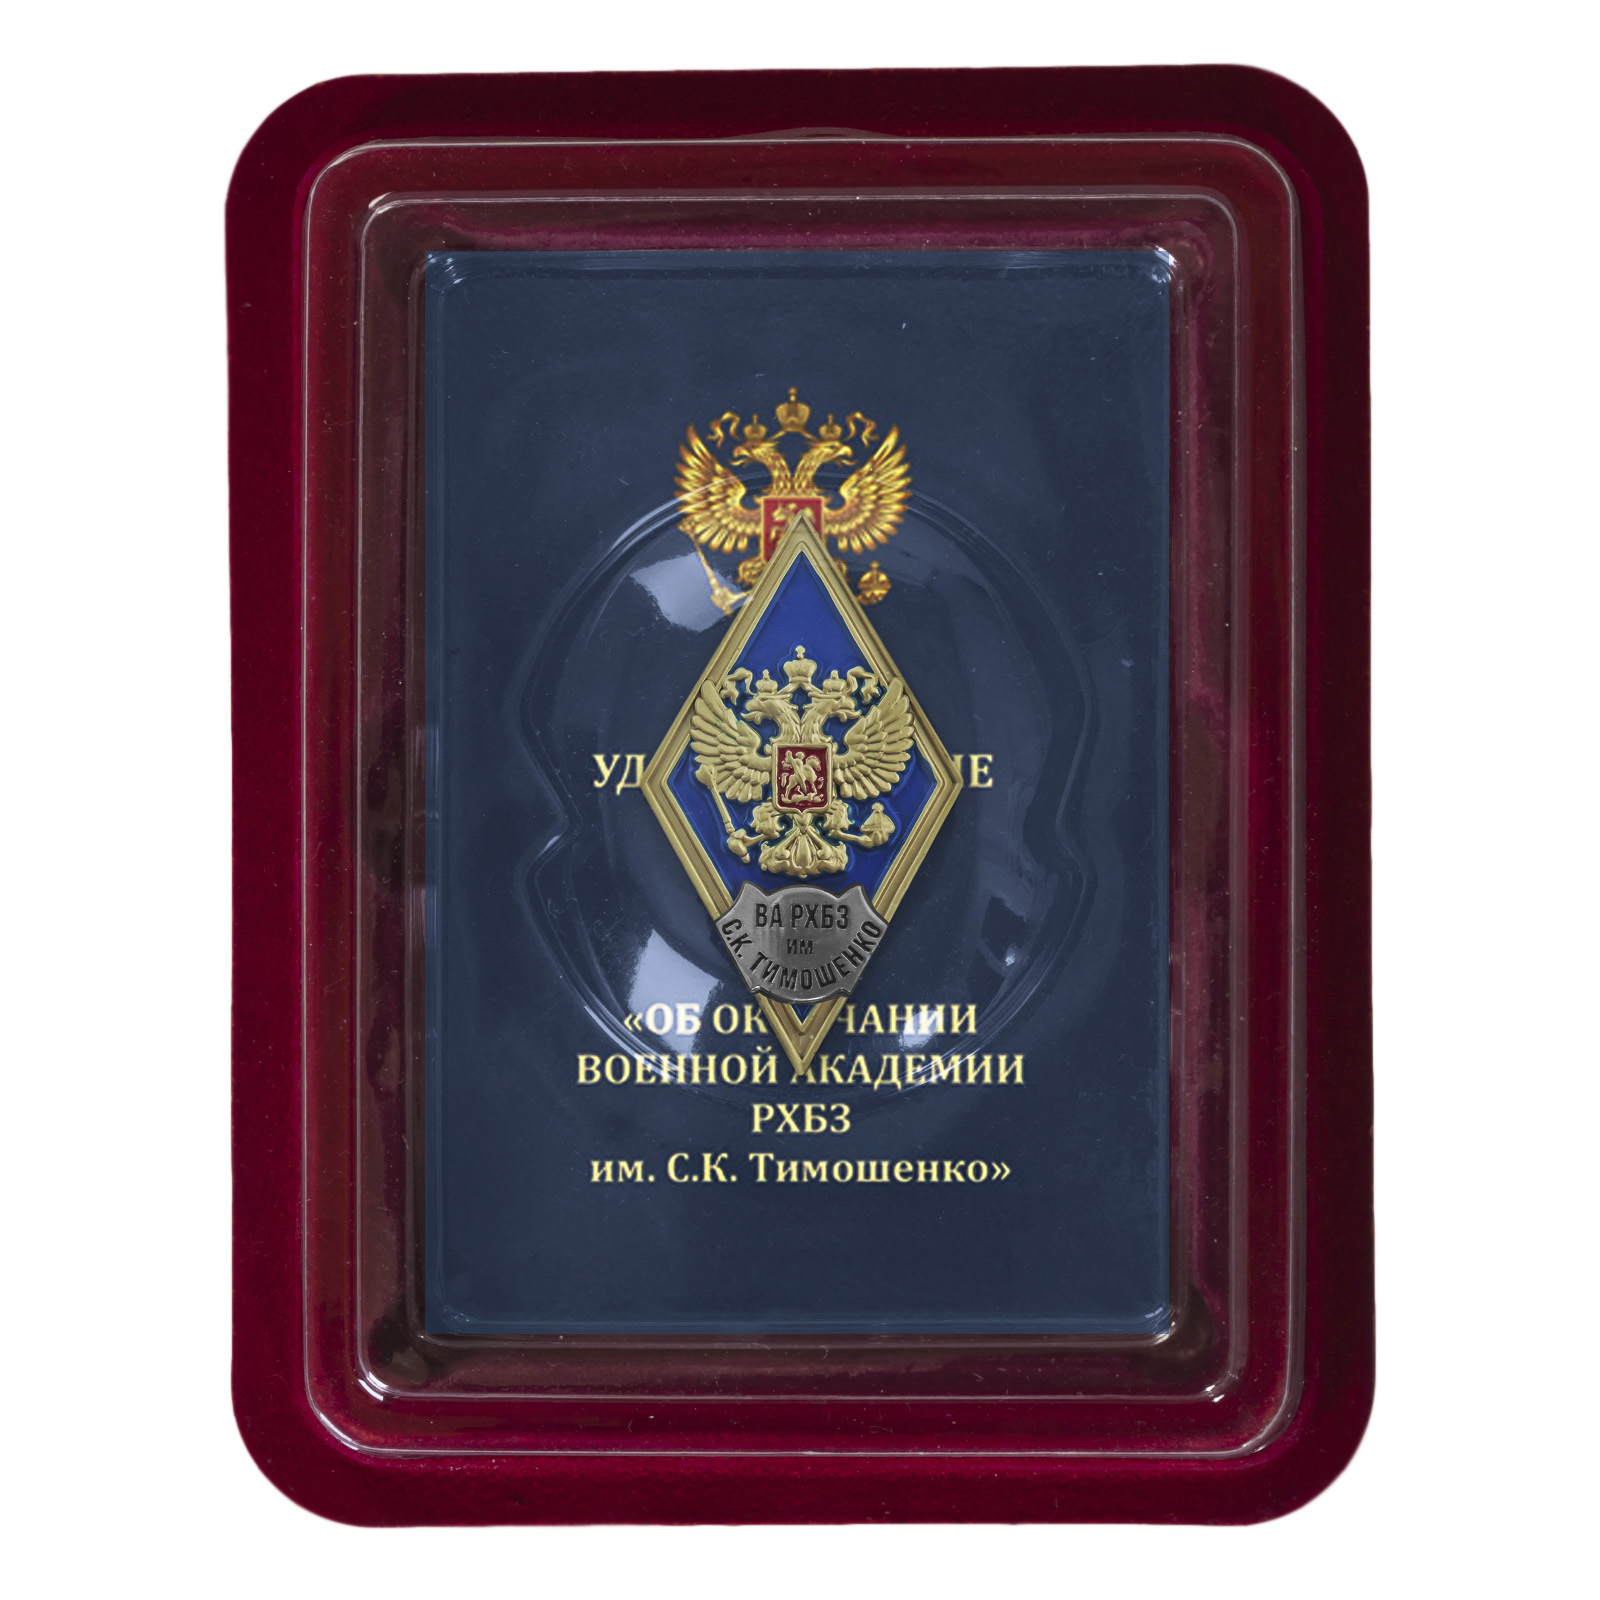 Купить знак об окончании ВА РХБЗ им. С.К. Тимошенко выгодно